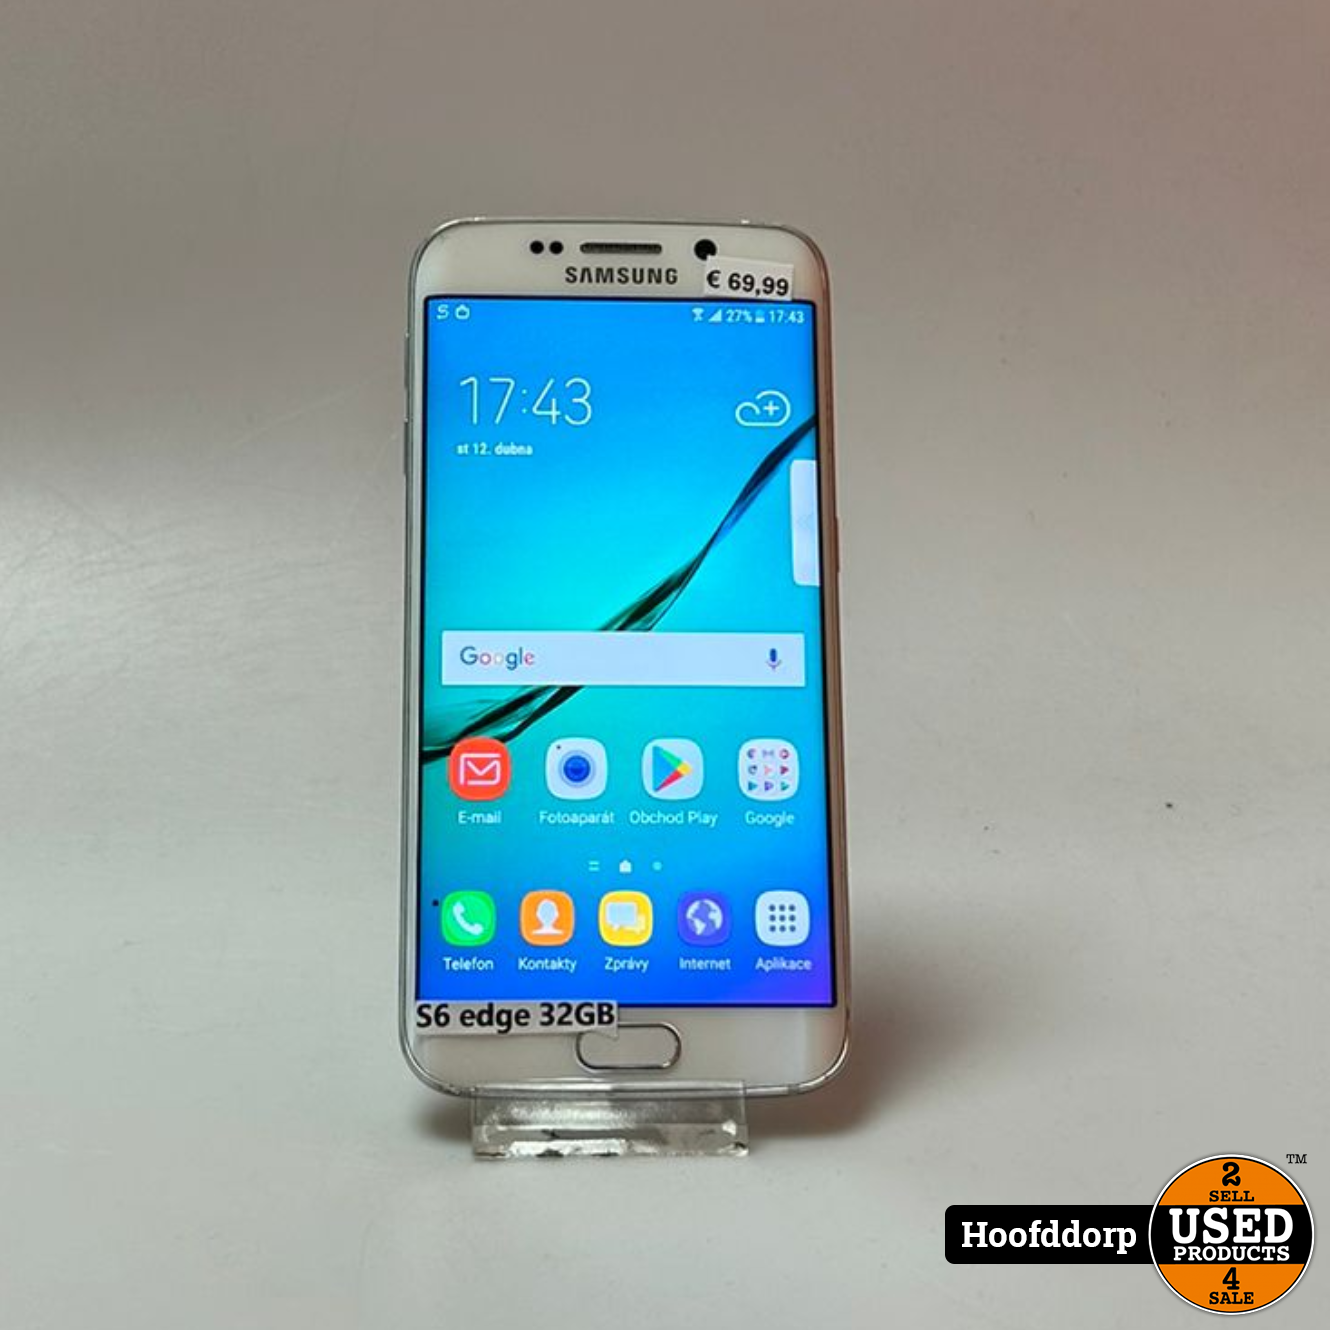 Het opwinding eigenaar Samsung Galaxy S6 Edge White - Used Products Hoofddorp